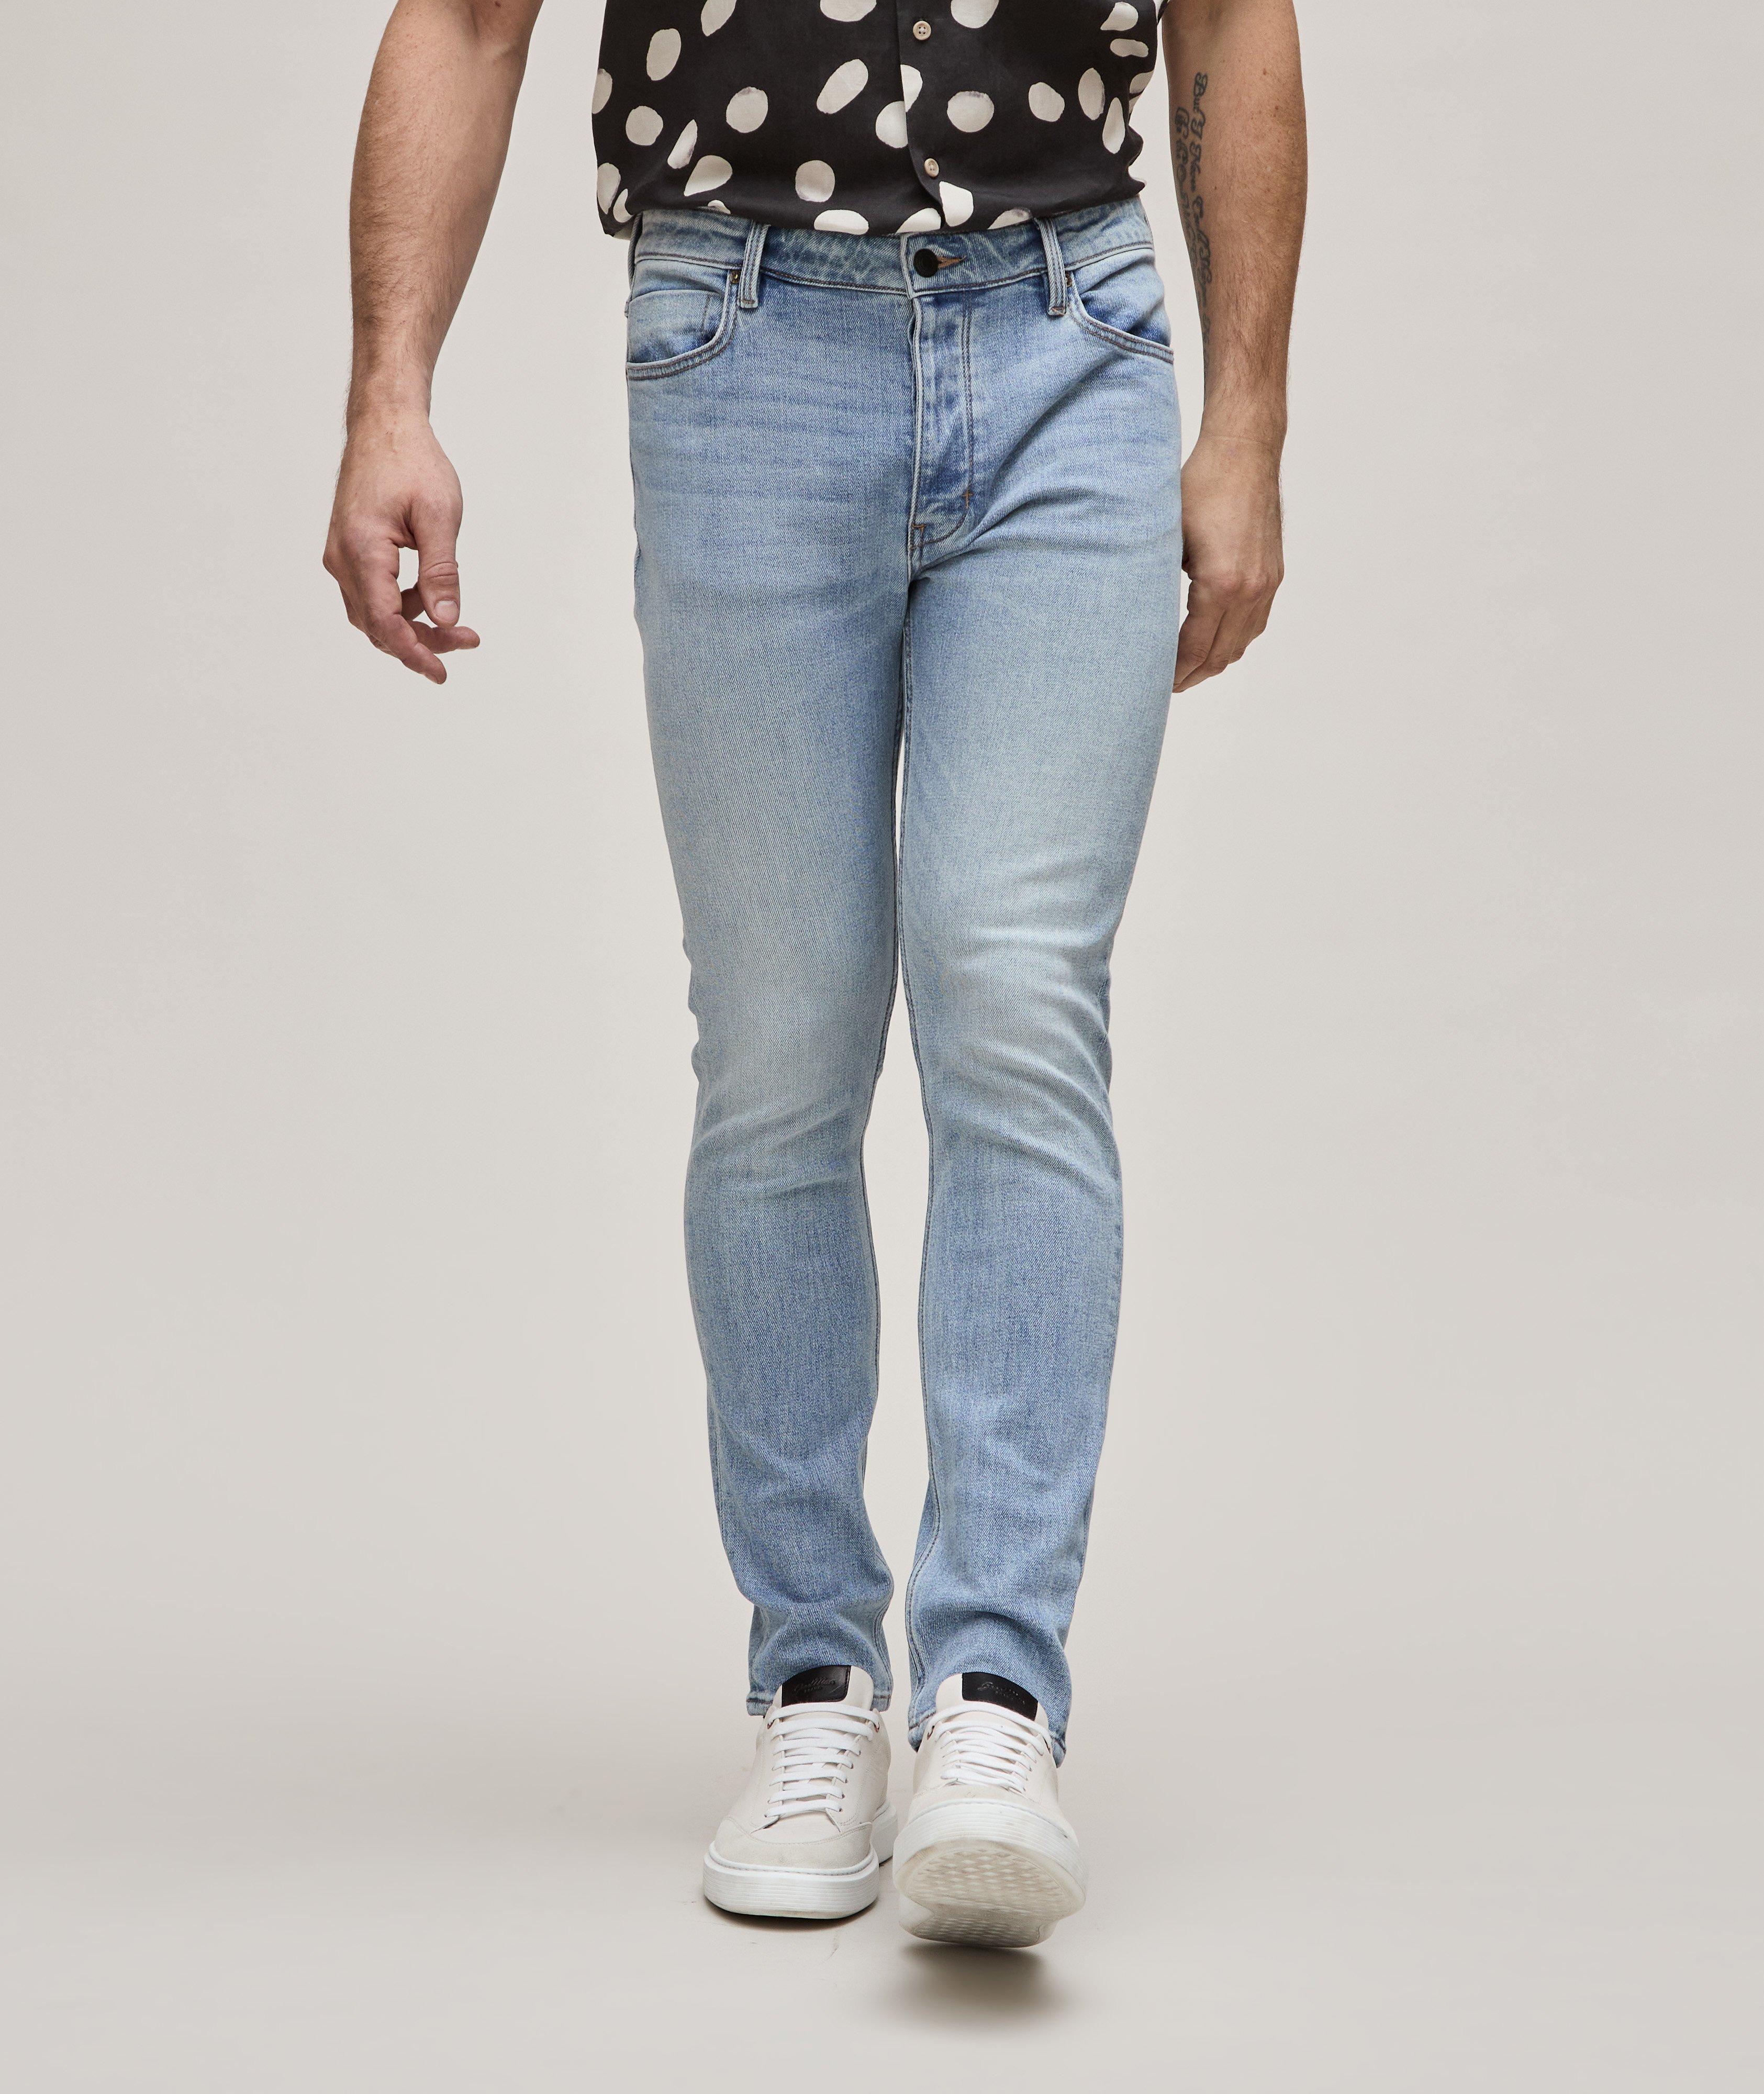 Lou Slim Alloy Cotton-Blend Jeans image 1